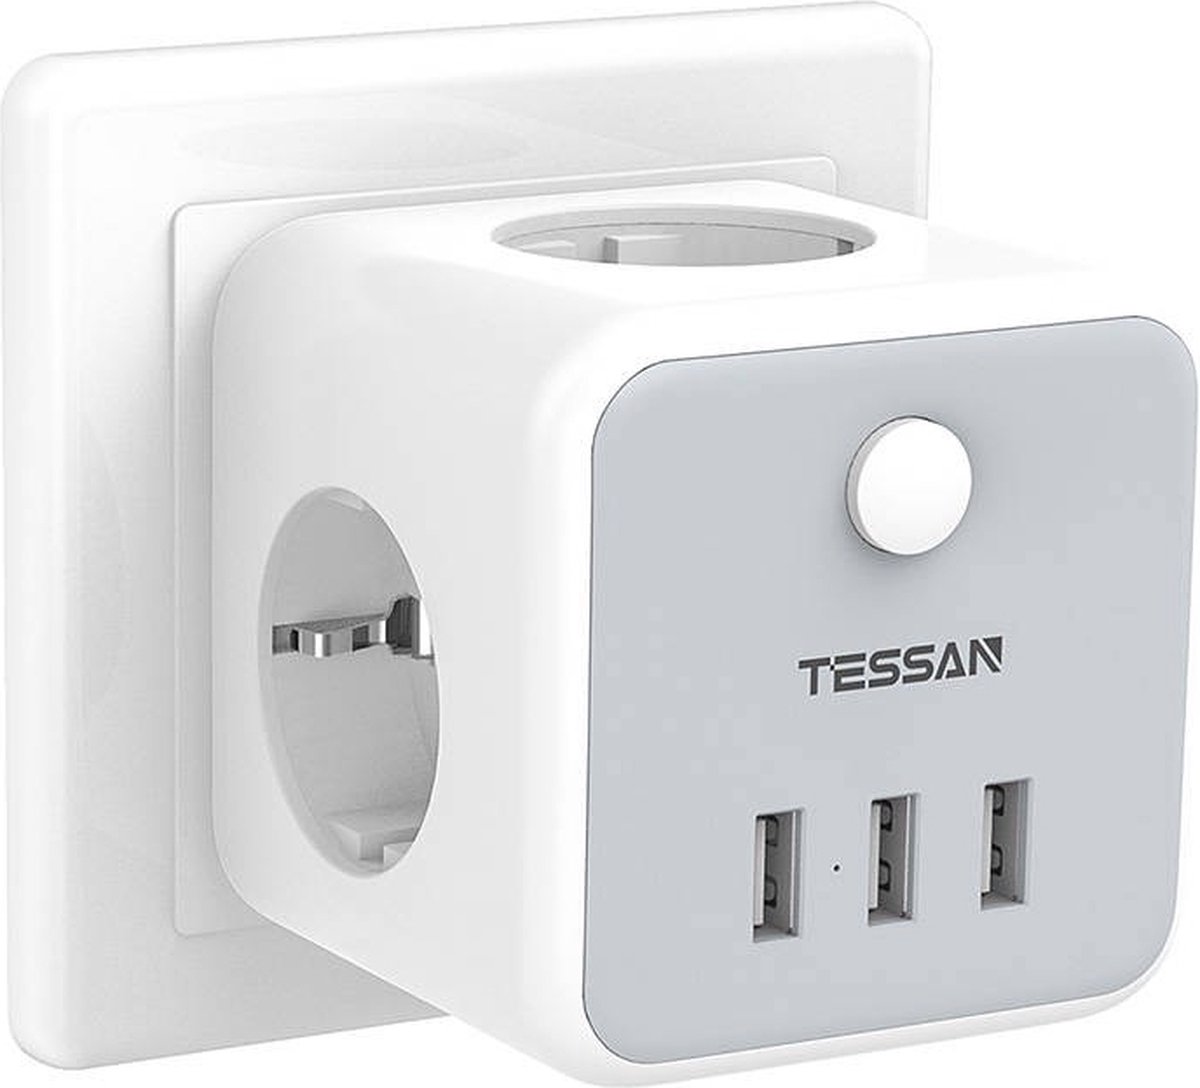 Prises, multiprises et accessoires électriques Tessan 5 en 1 Multiprise  Electrique Murale 3 Prises et 2 Ports USB,Interrupteur,Gris